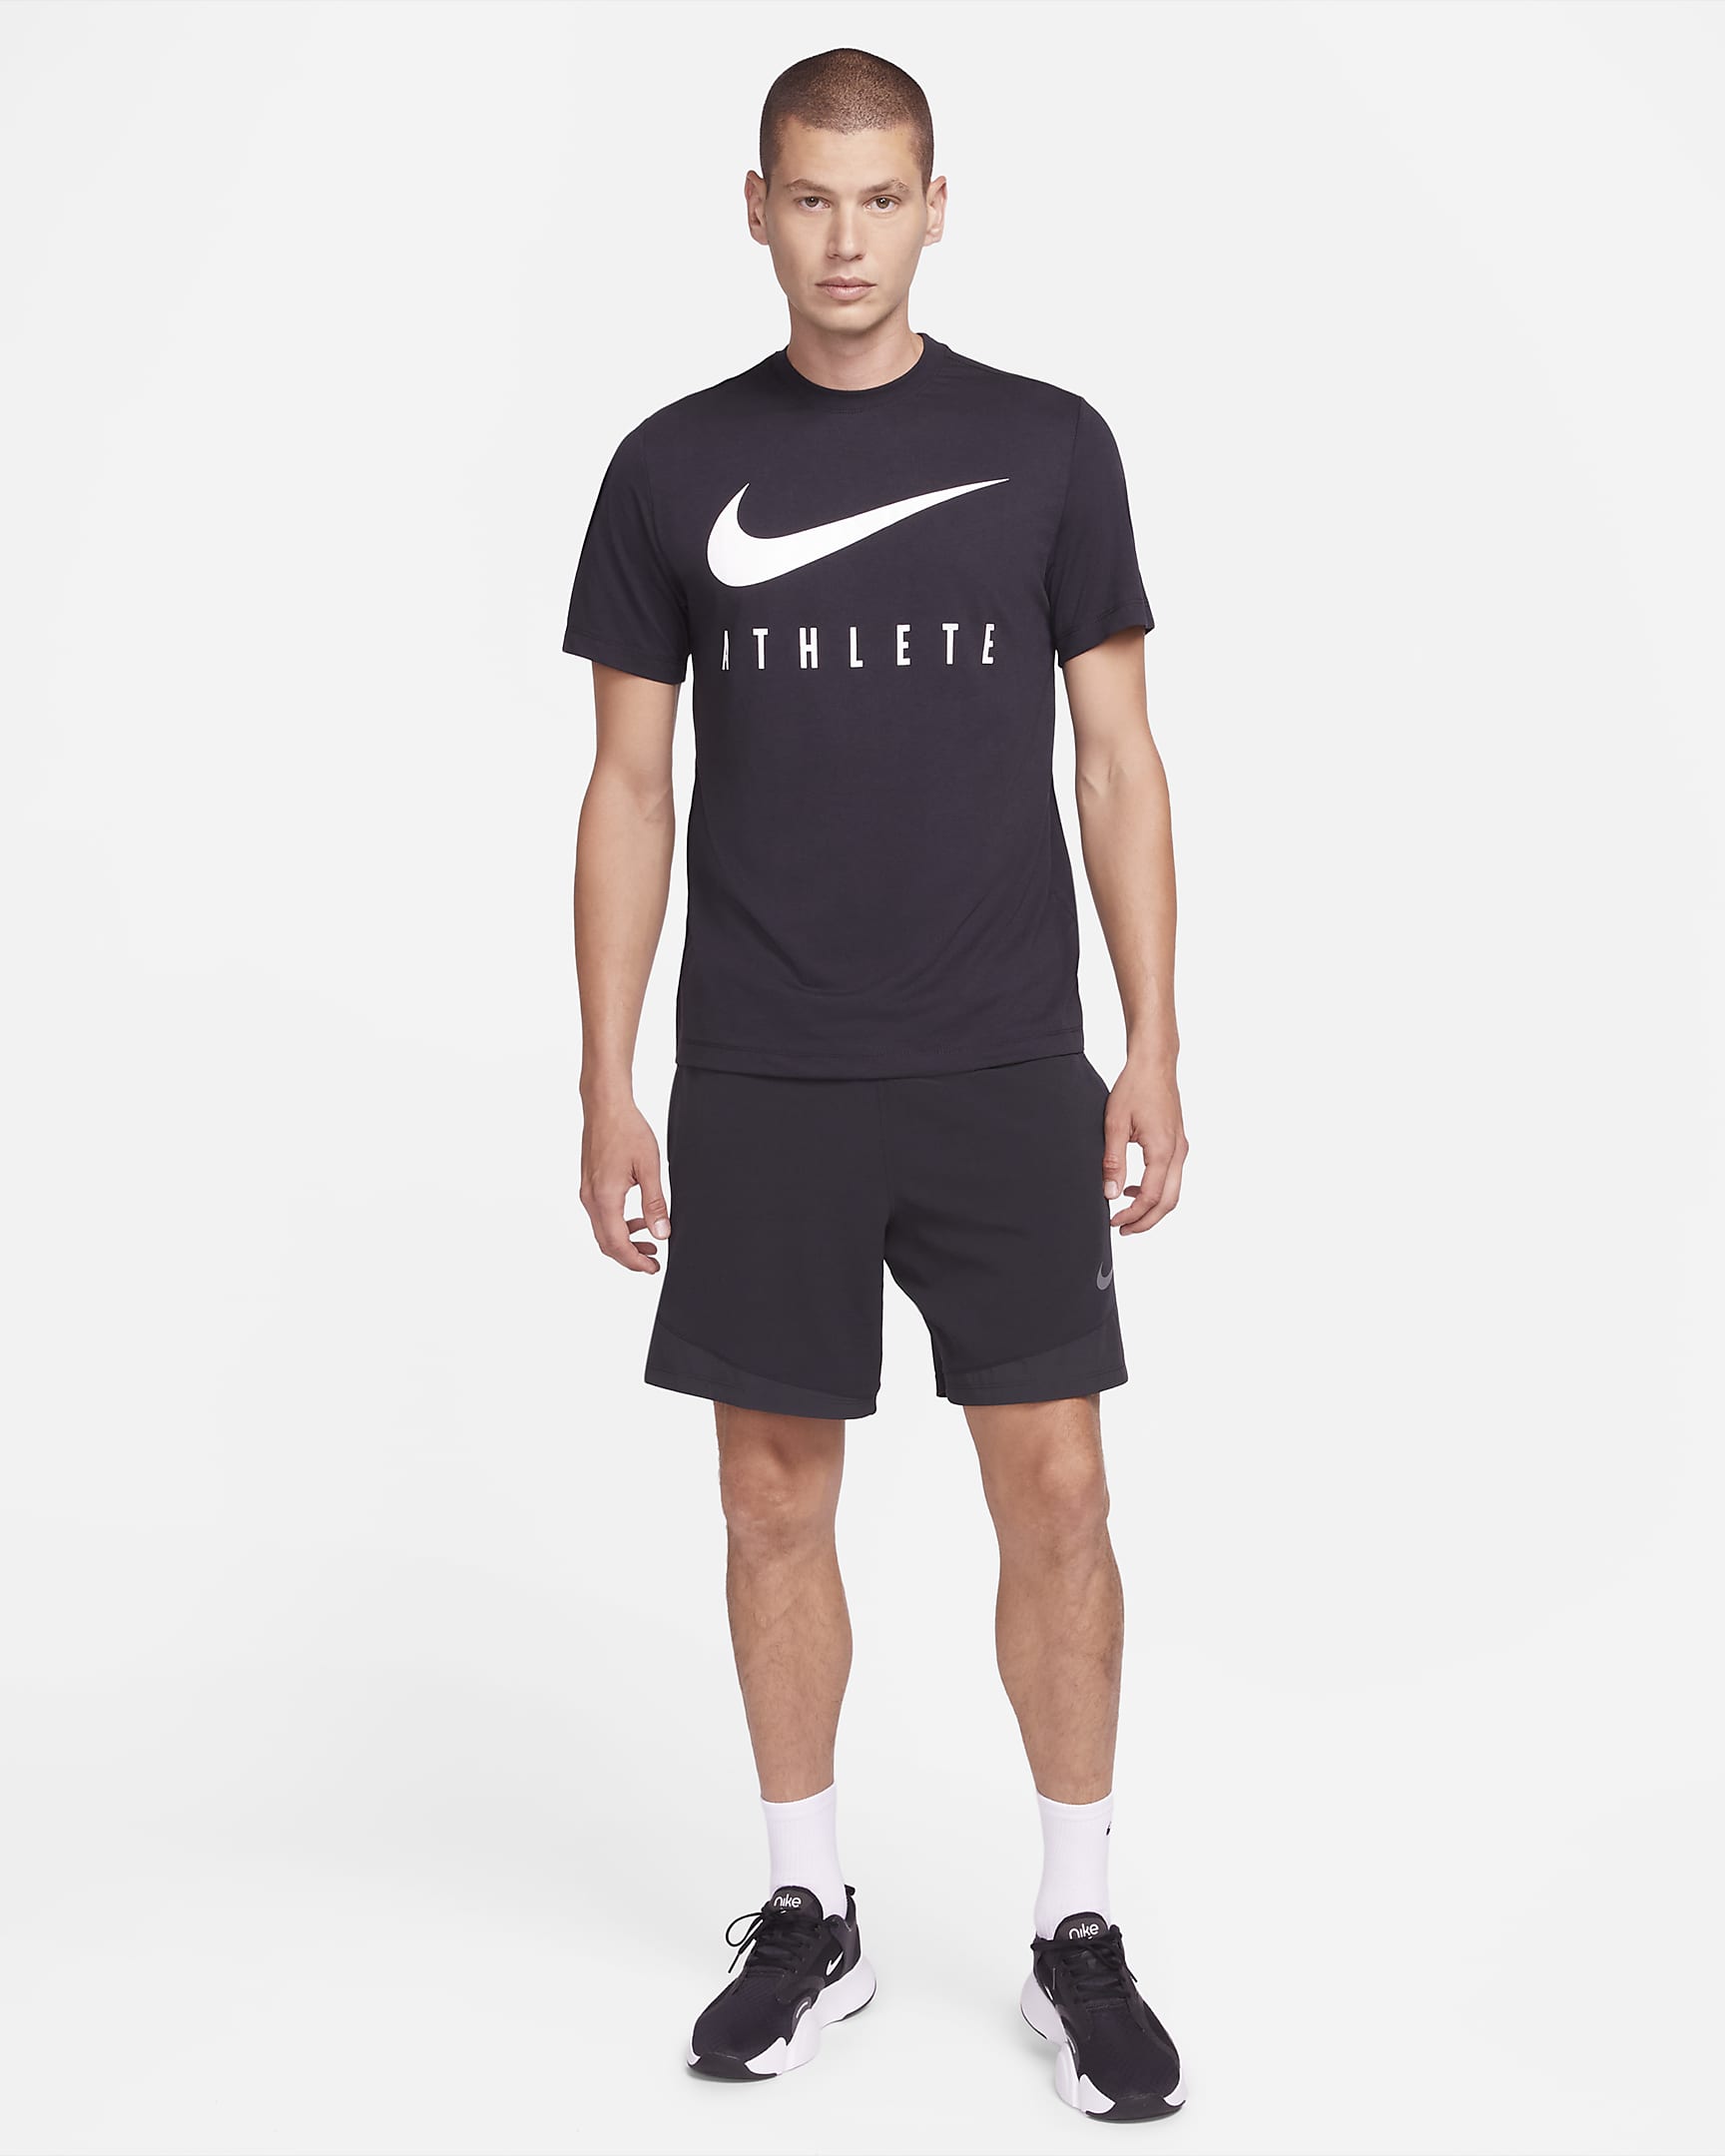 Nike Dri-FIT Men's Training T-Shirt. Nike AU